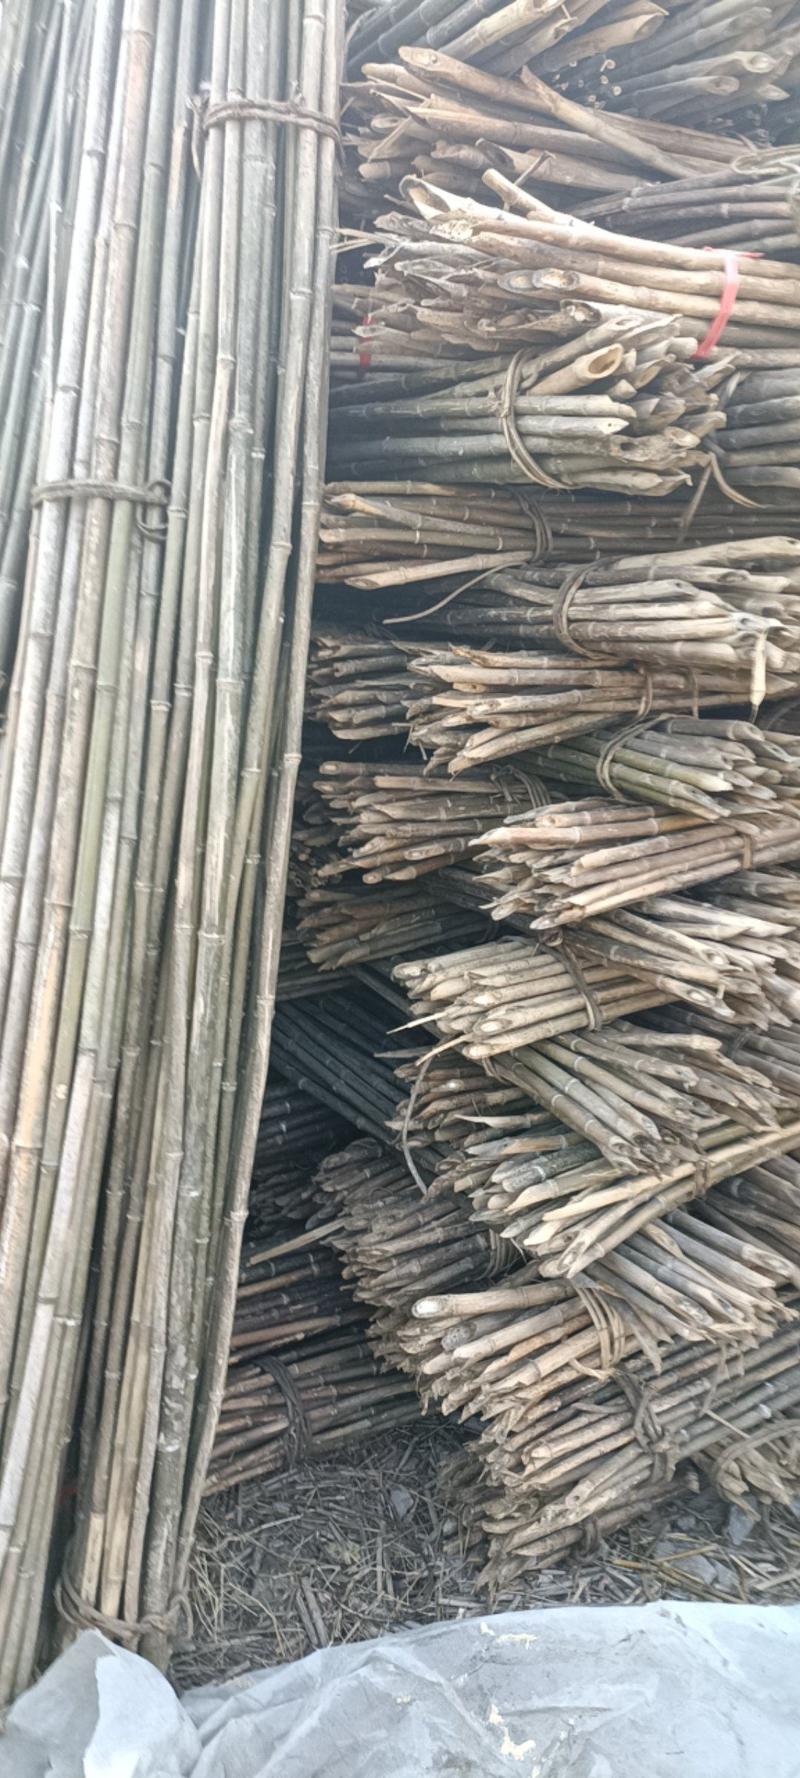 4—5米竹竿，原产地直销，质量保证，价格优惠。